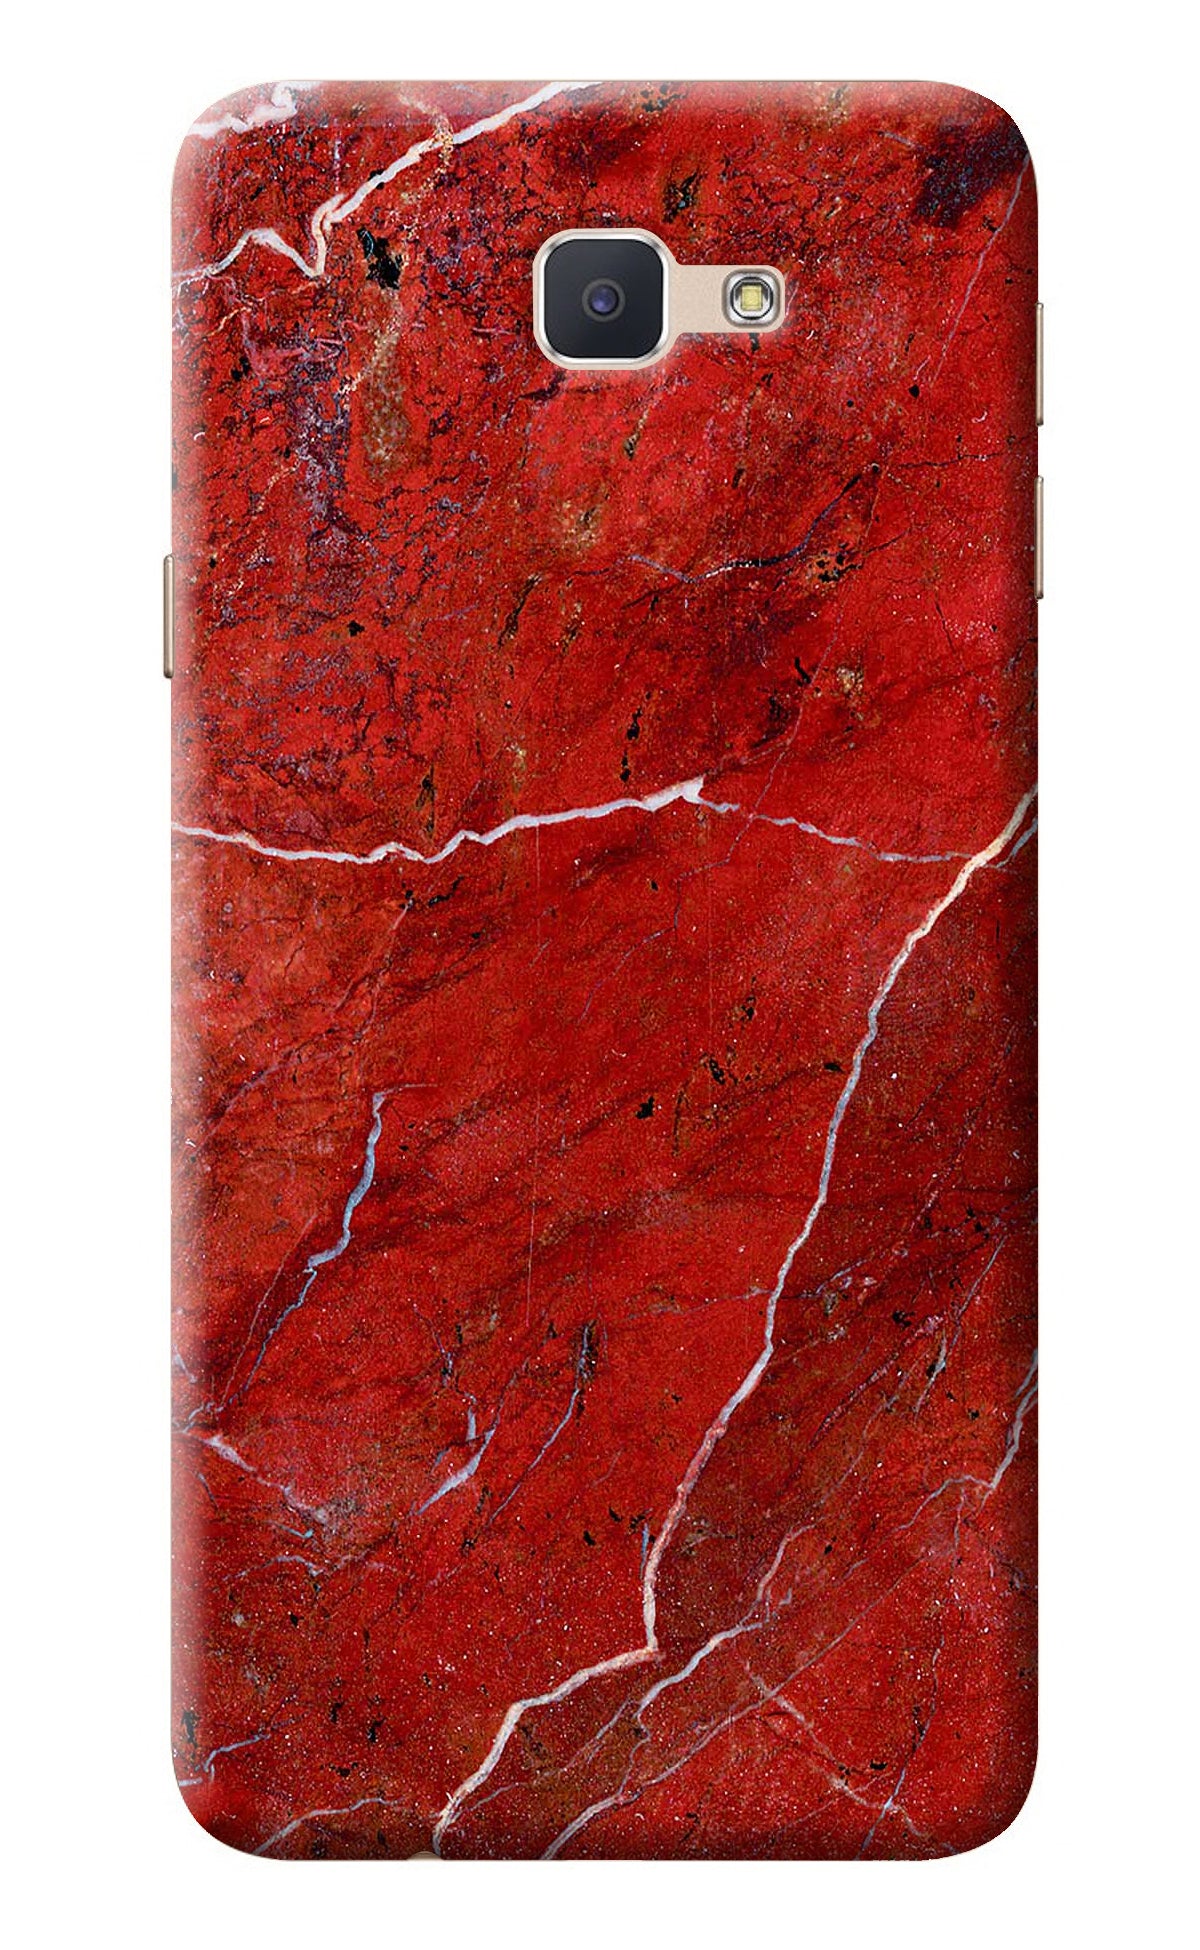 Red Marble Design Samsung J7 Prime Back Cover